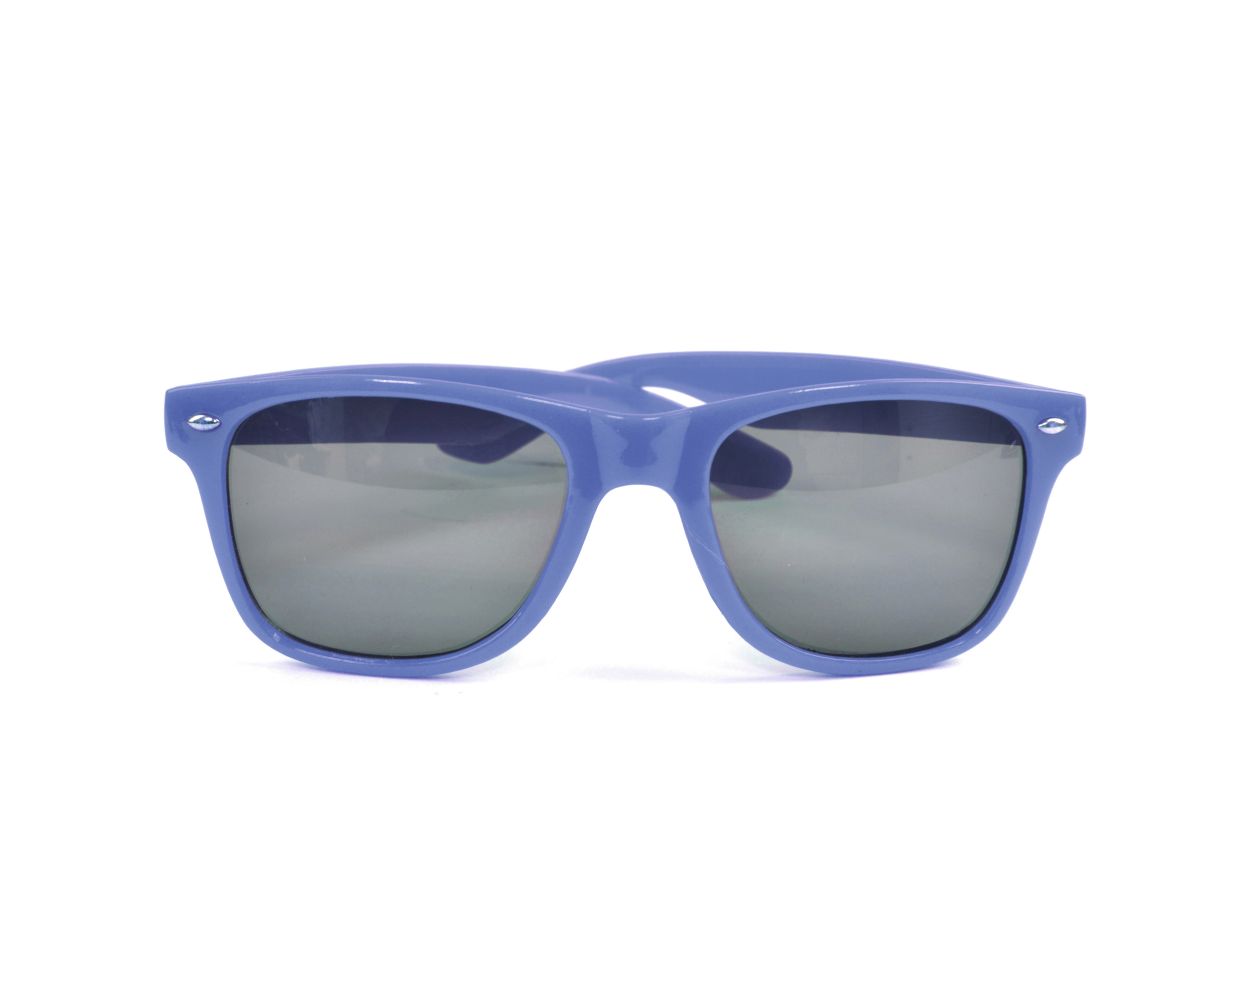 Turret Polarized Sunglasses in Gray Silver Mirror | Costa Del Mar®